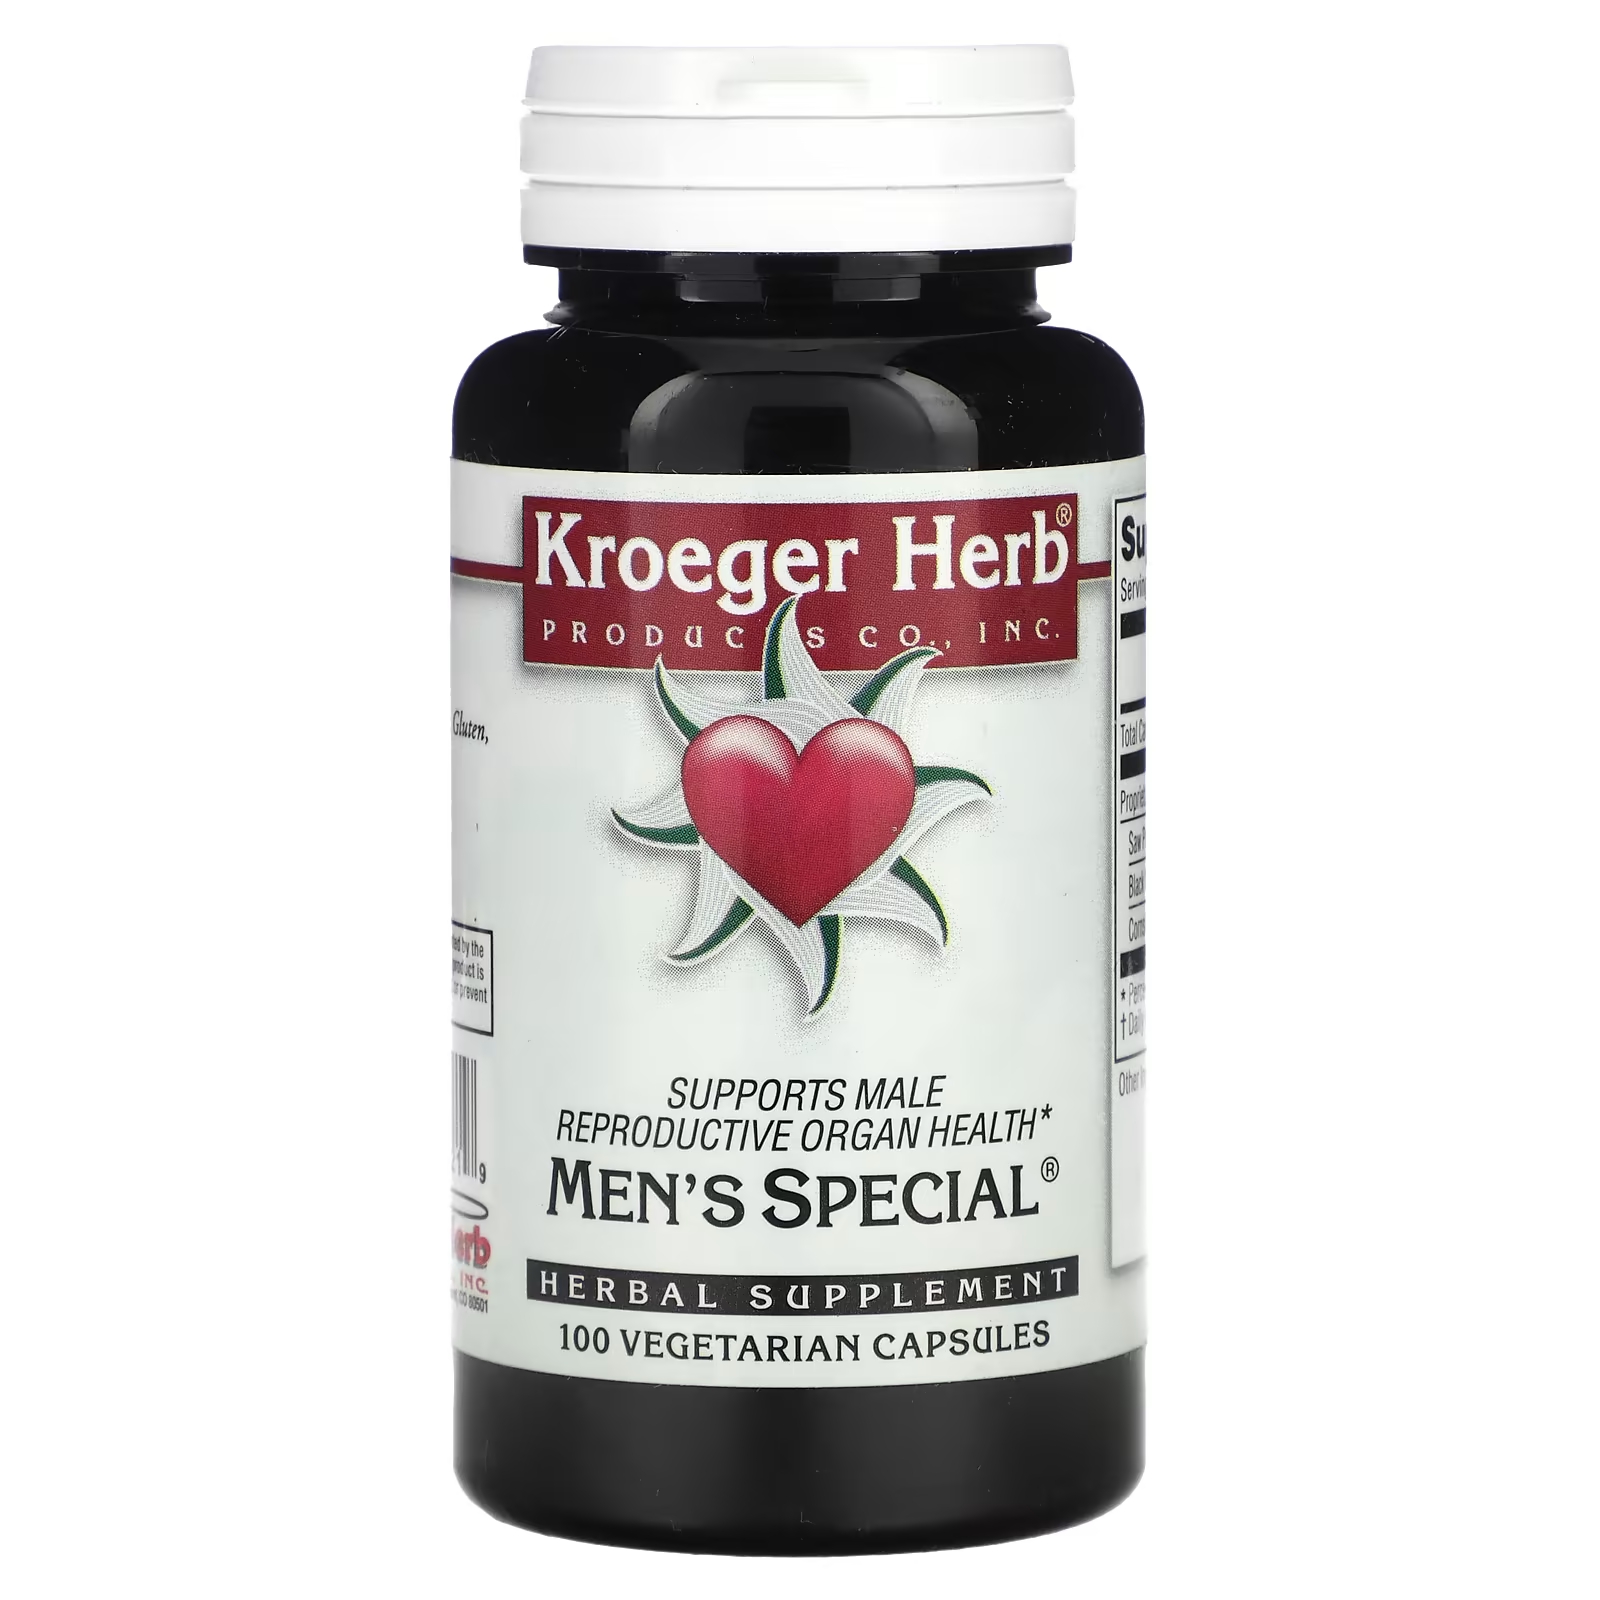 Растительная добавка Kroeger Herb Co для мужчин, 100 капсул растительная добавка kroeger herb co балансировщик полярности 100 капсул